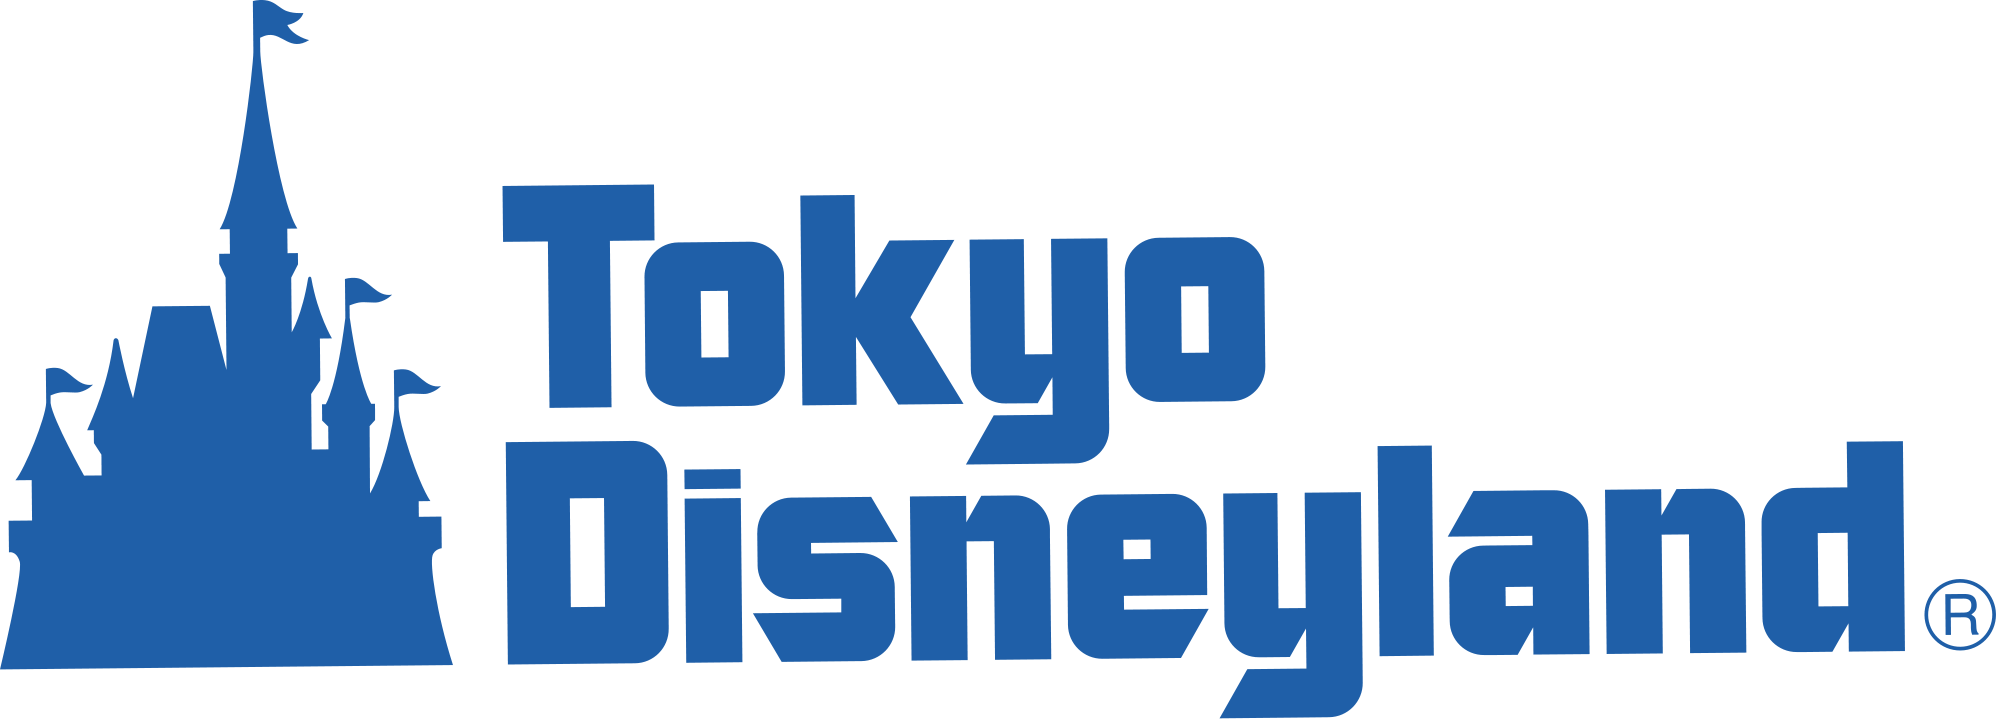 Walt Disney Resorts and Parks Logo - Image - Tokyo Disneyland logo.png | Disney Parks Wiki | FANDOM ...